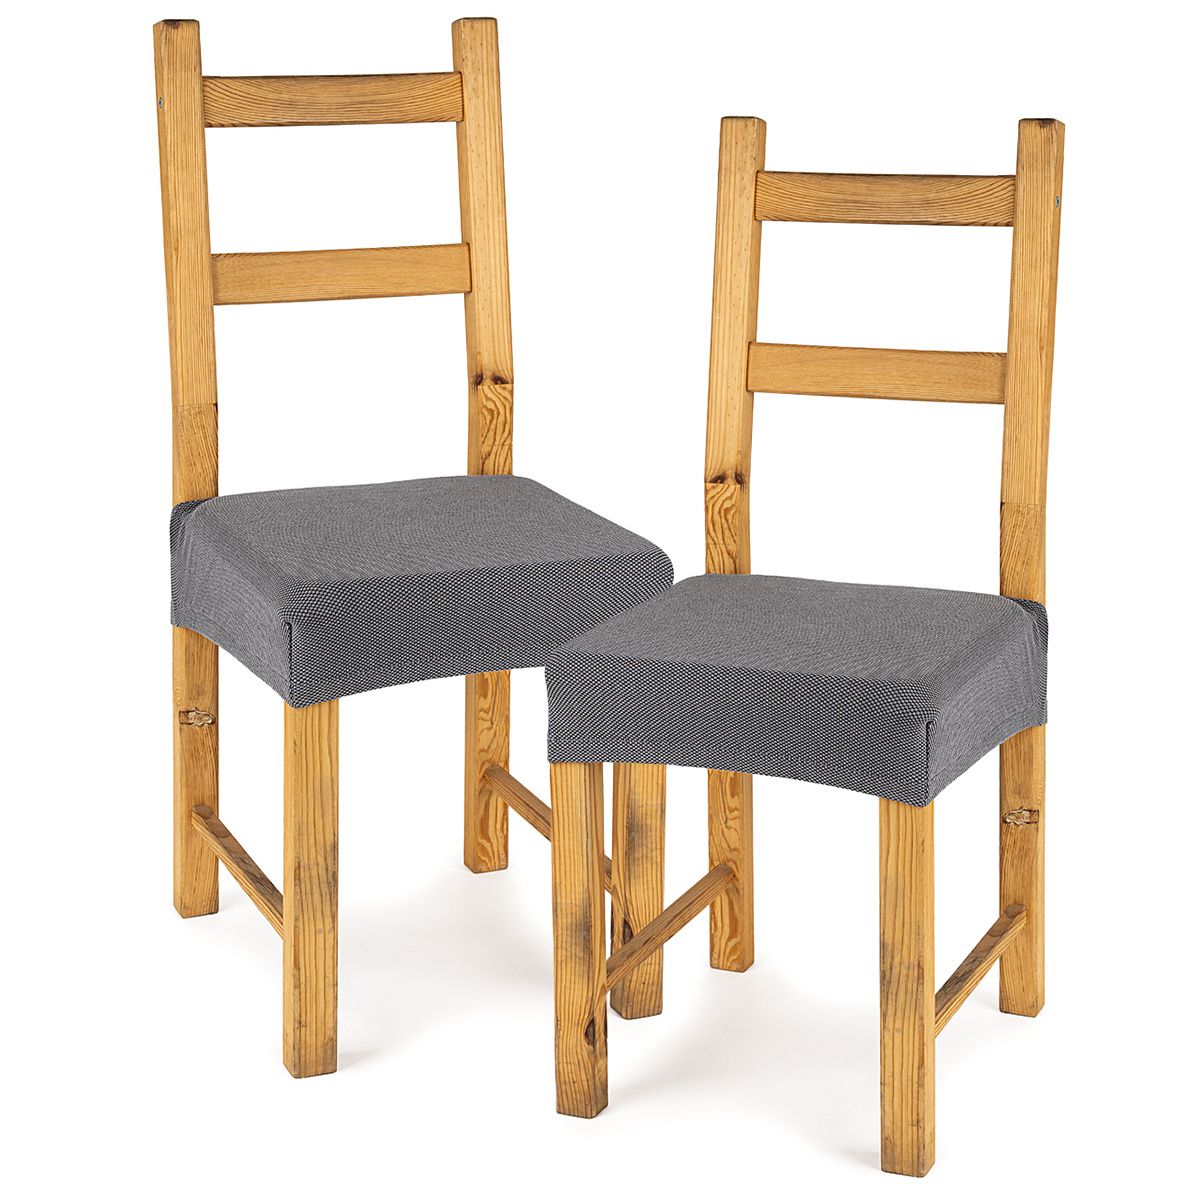 4Home Multielastický potah na sedák na židli Comfort šedá, 40 - 50 cm, sada 2 ks - 4home.cz